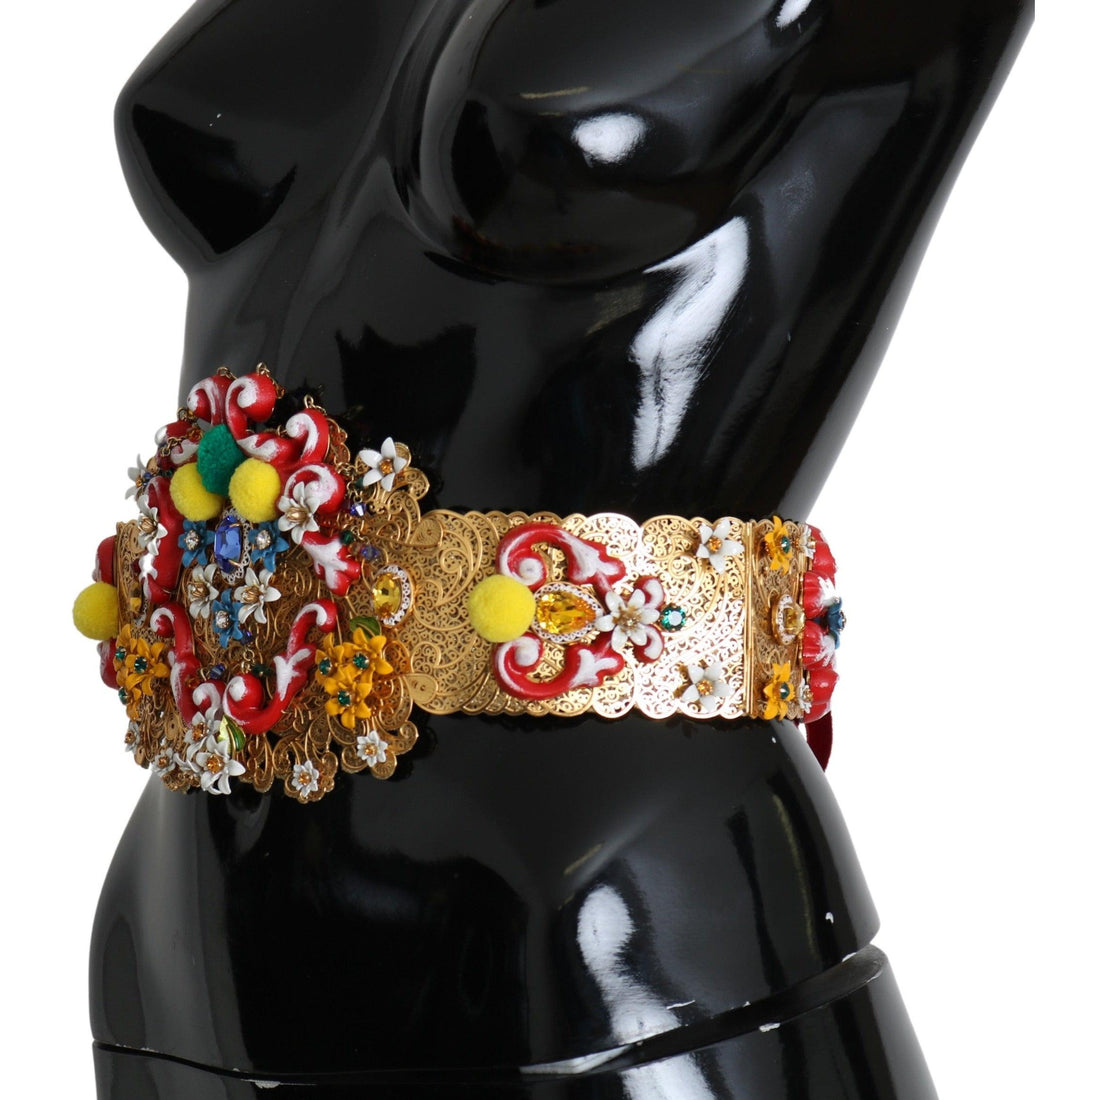 Dolce & Gabbana multicolor Embellished Floral Crystal Wide Waist Belt - Paris Deluxe